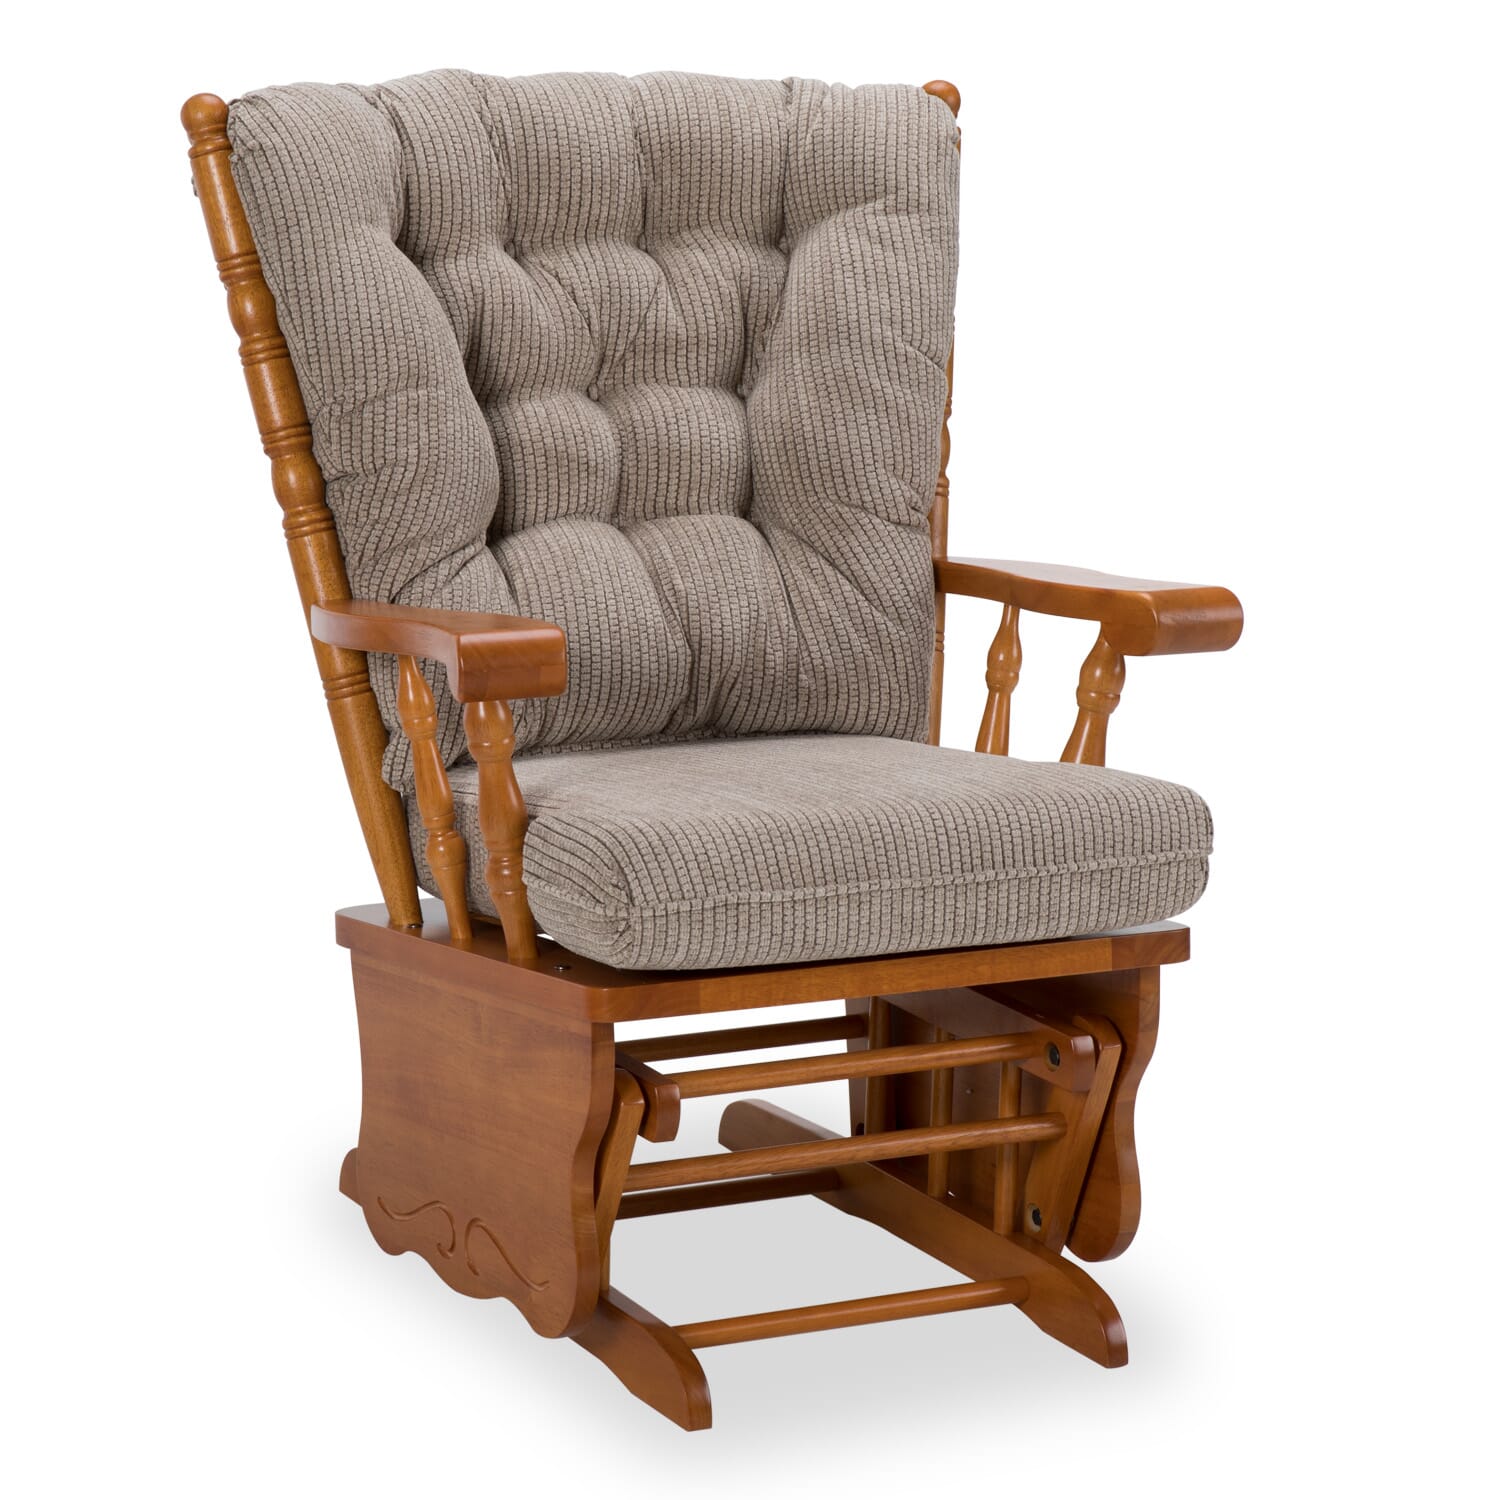 Arwyn Ii Glider Rocker Chairs Sale Wg R Furniture